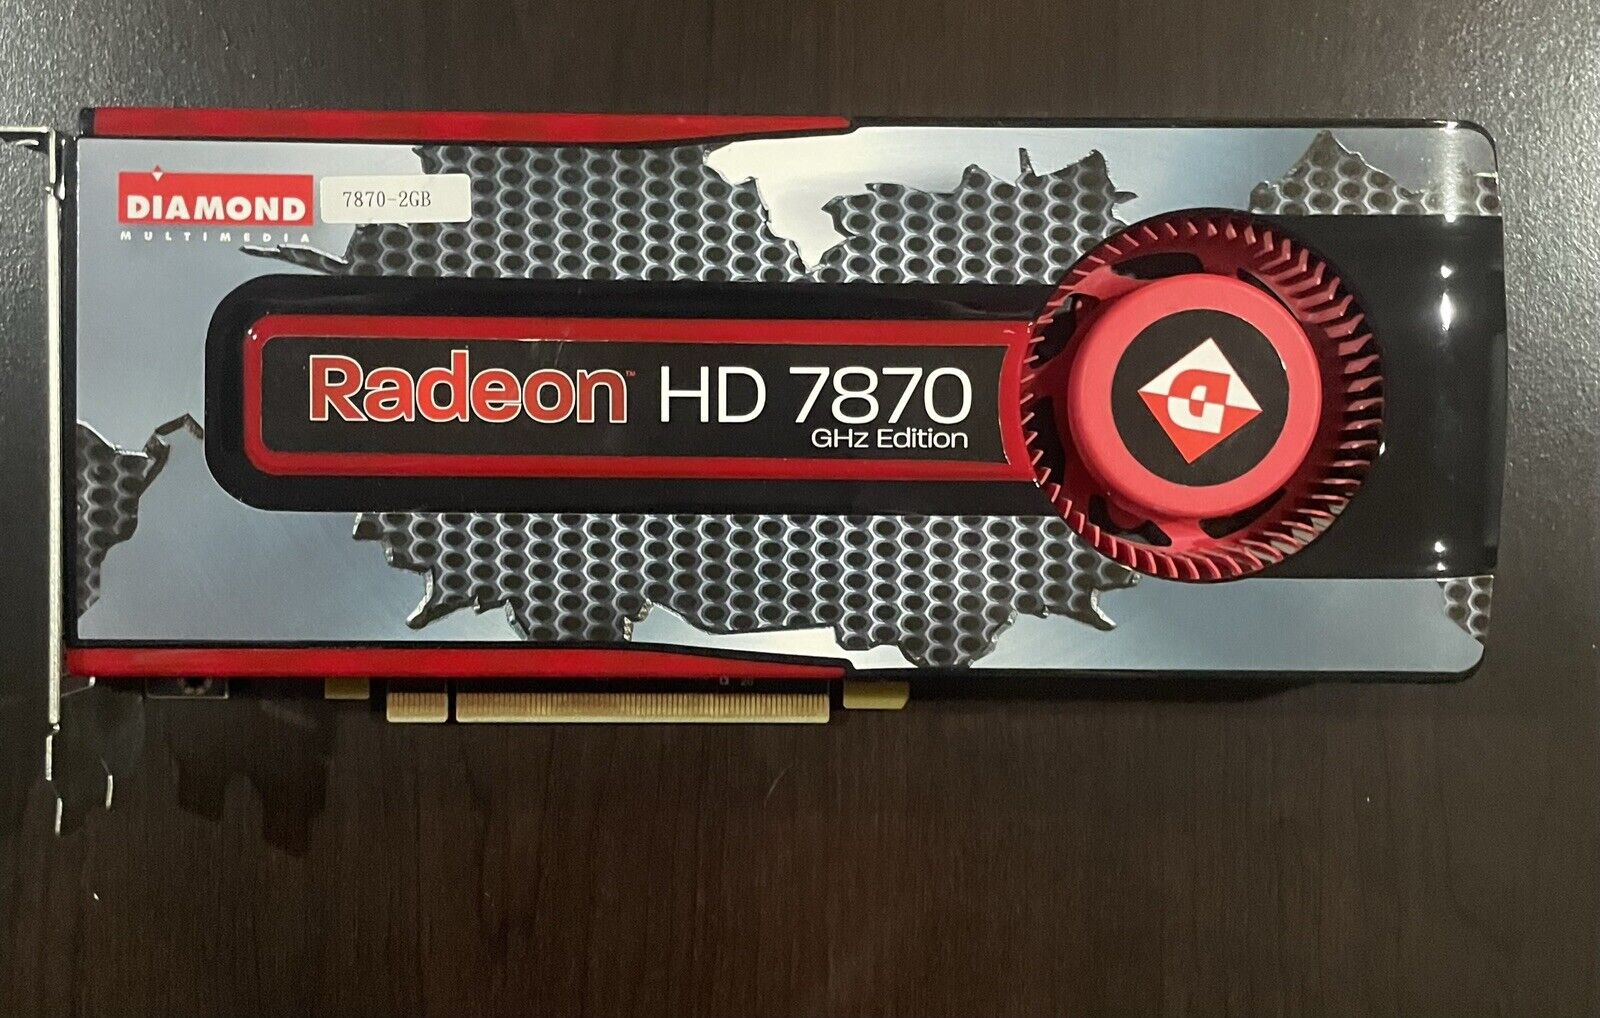 Diamond Radeon HD 7870 2GB GHZ Edition